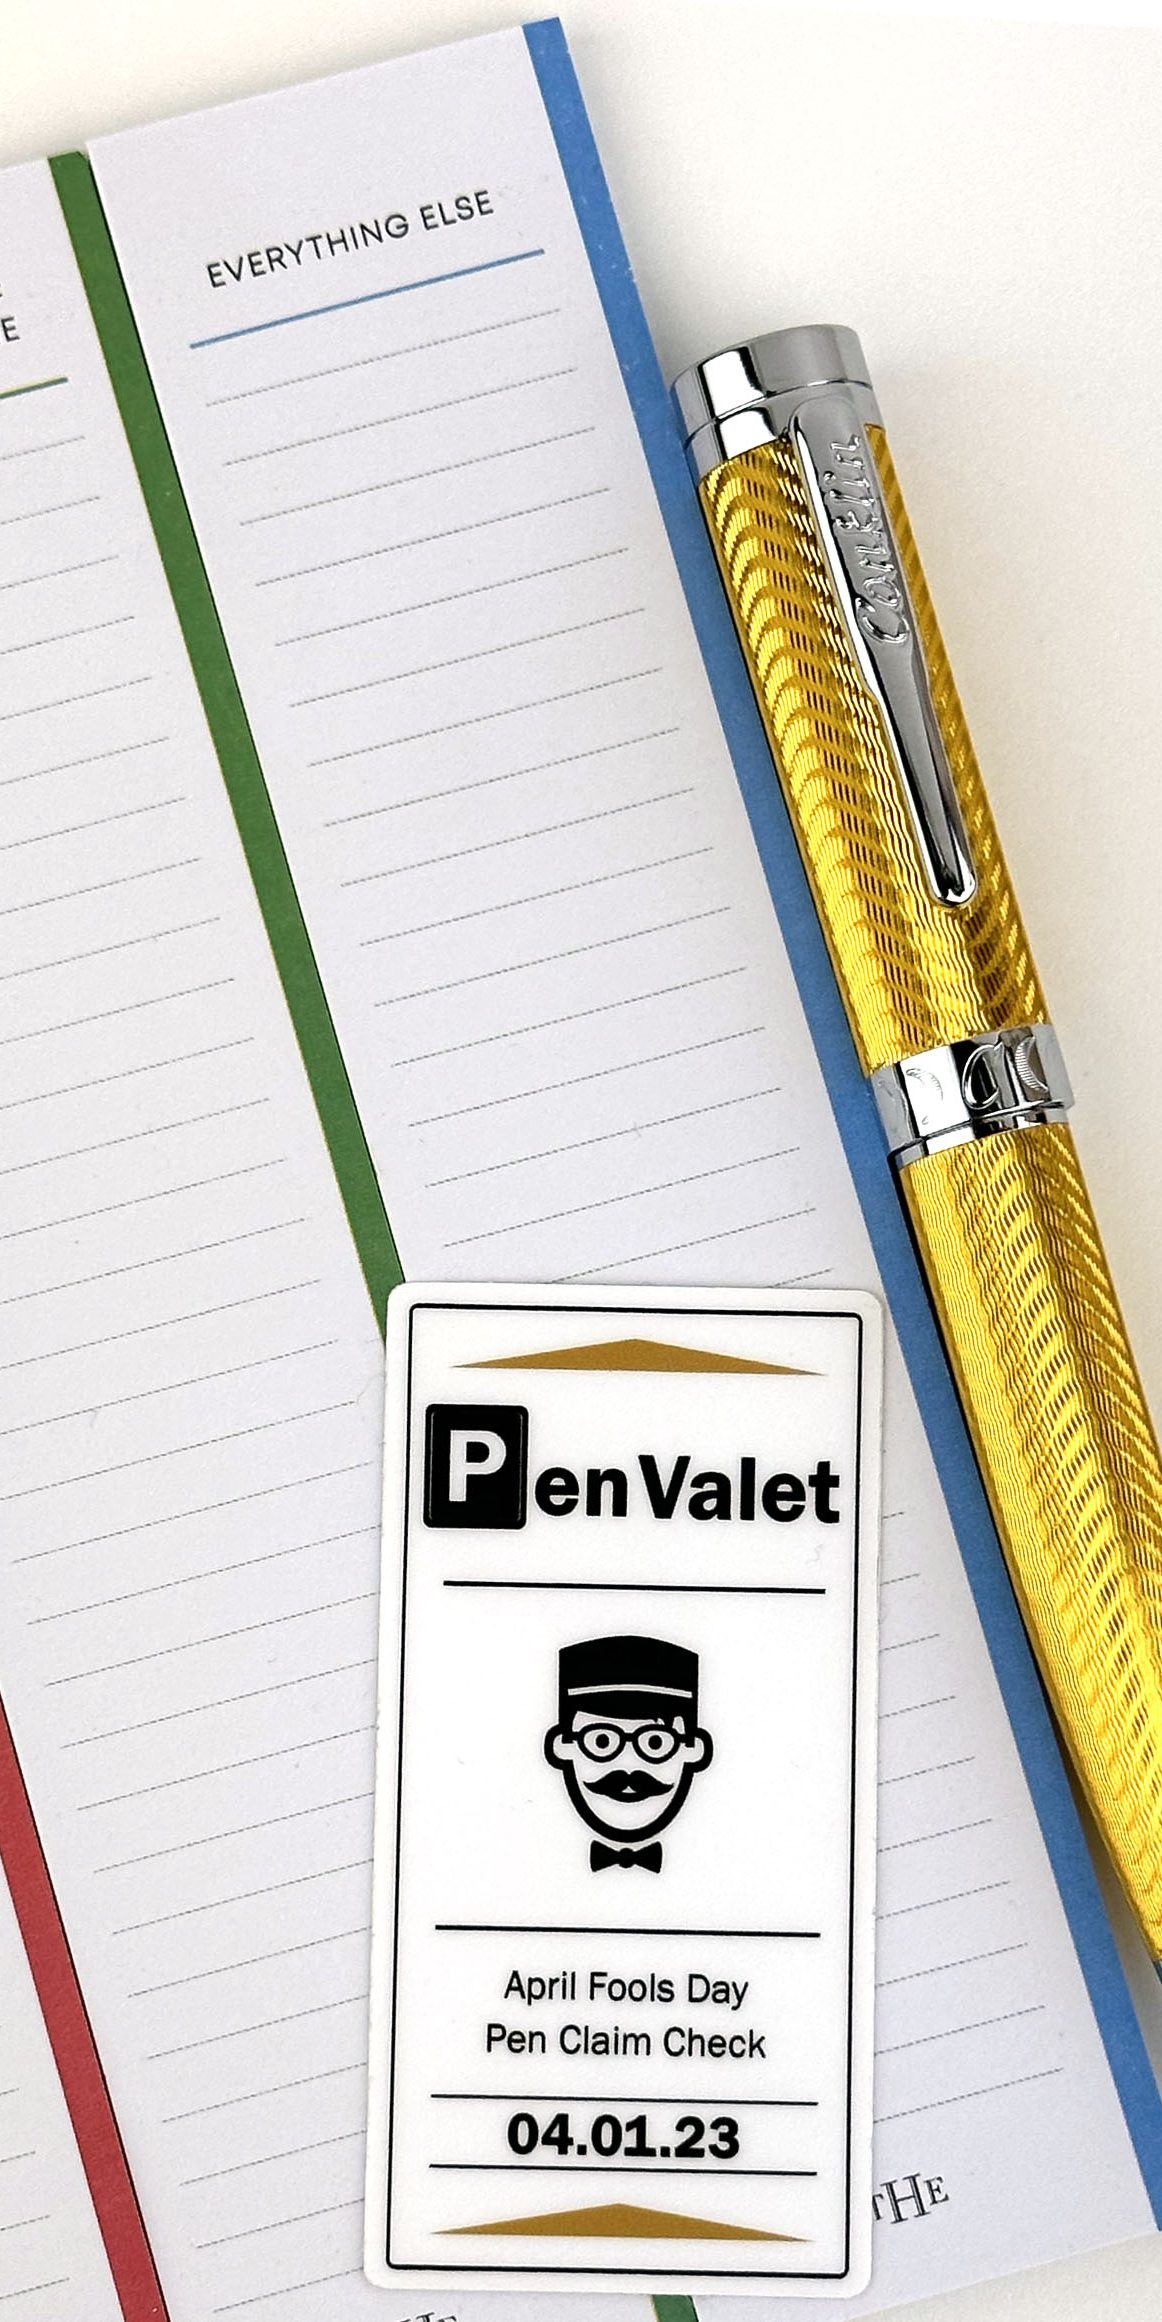 fav luxury pen retailer changes name to pen valet